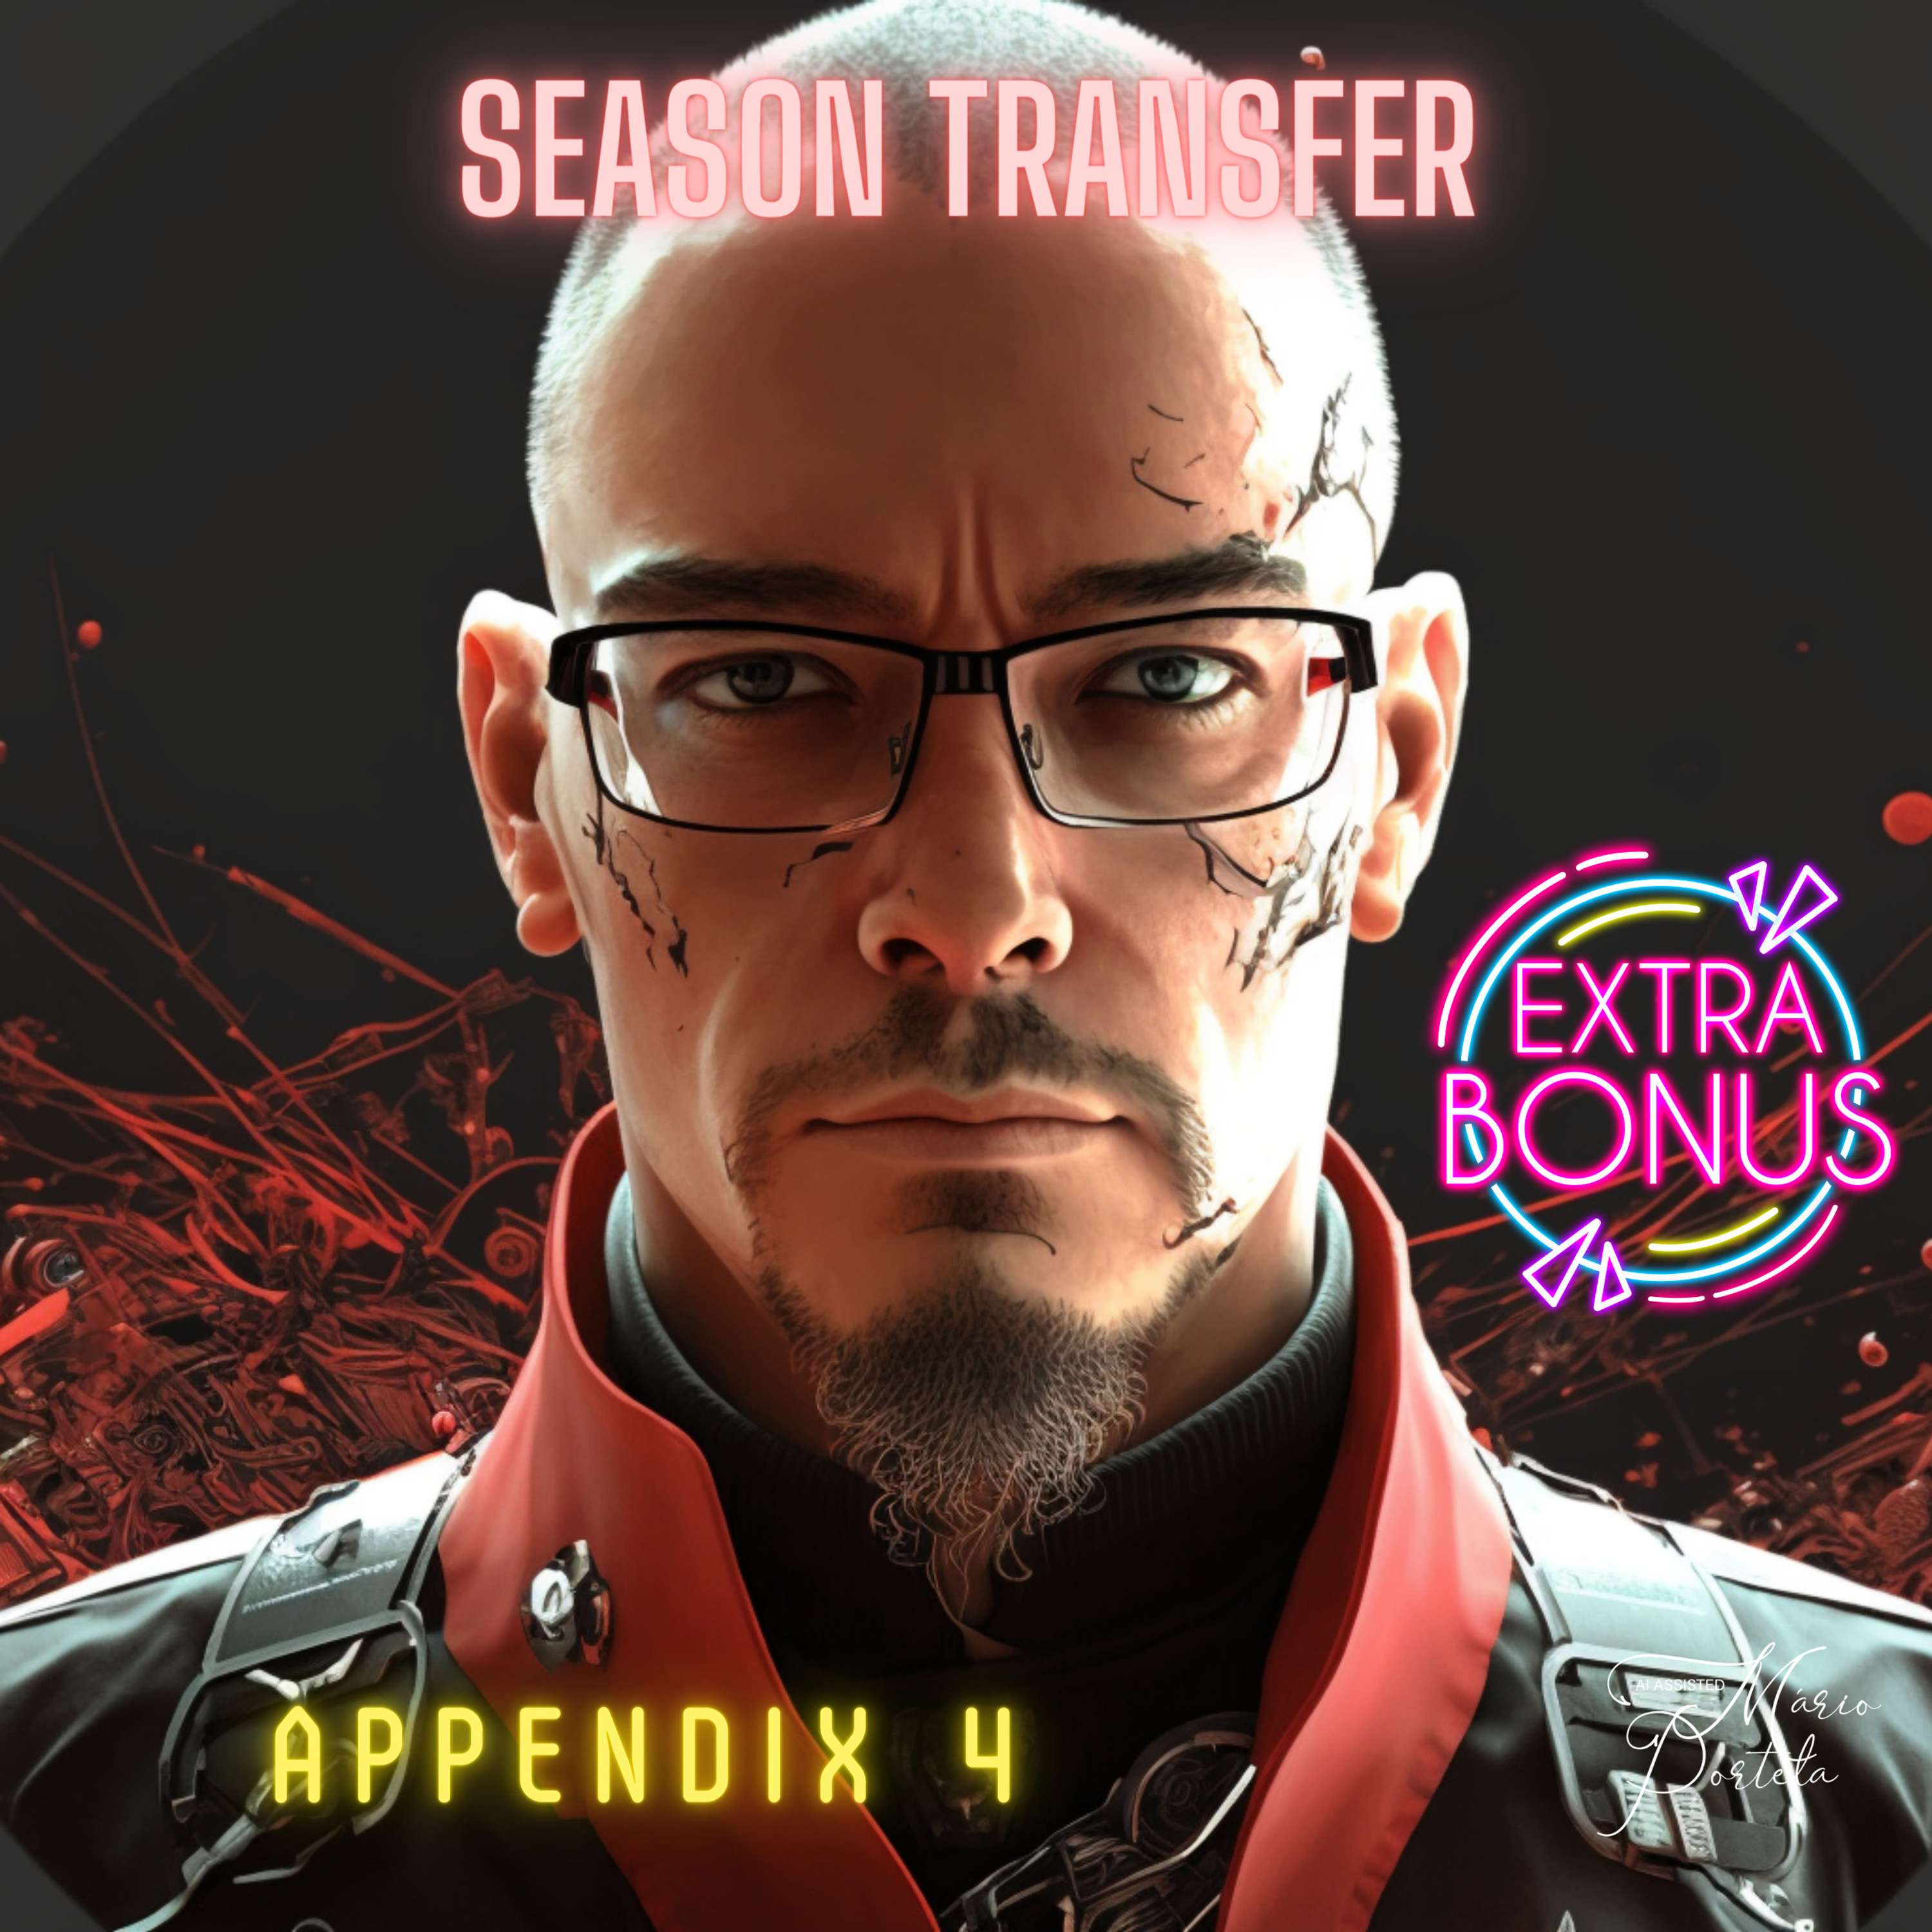 Appendix 4: Season Transfer